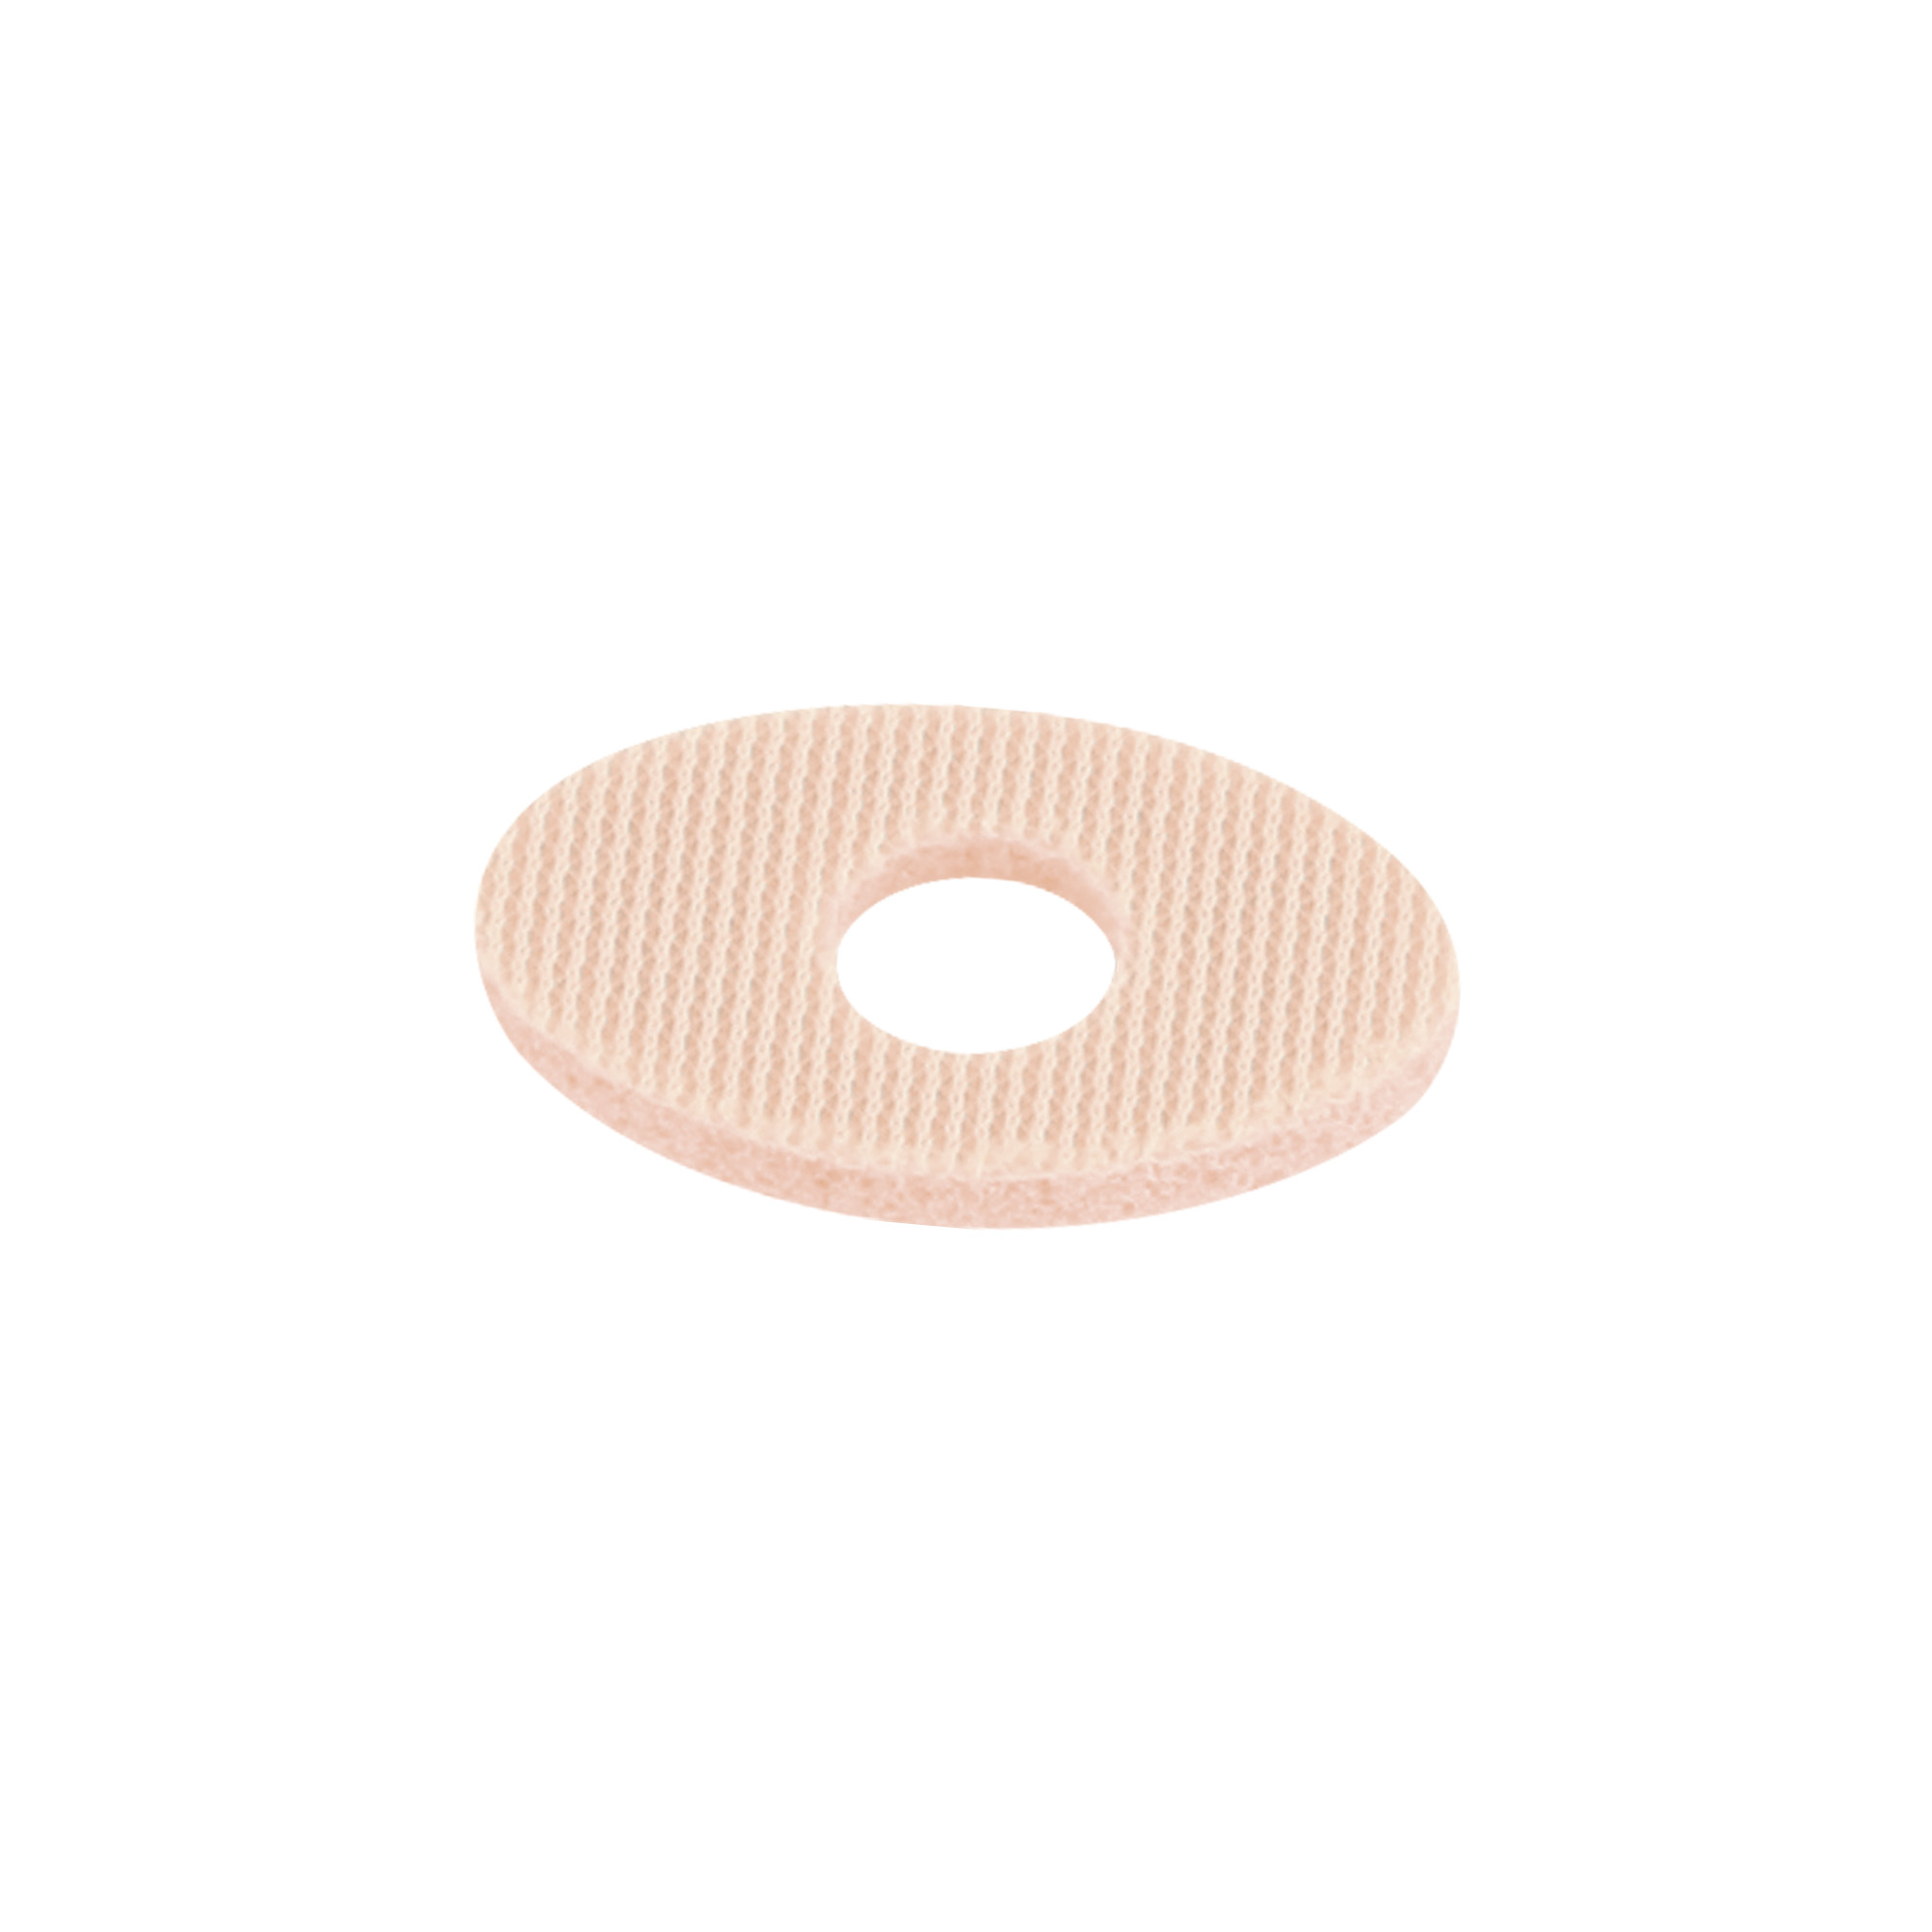 Protège-cors petits ovals avec trou central en latex